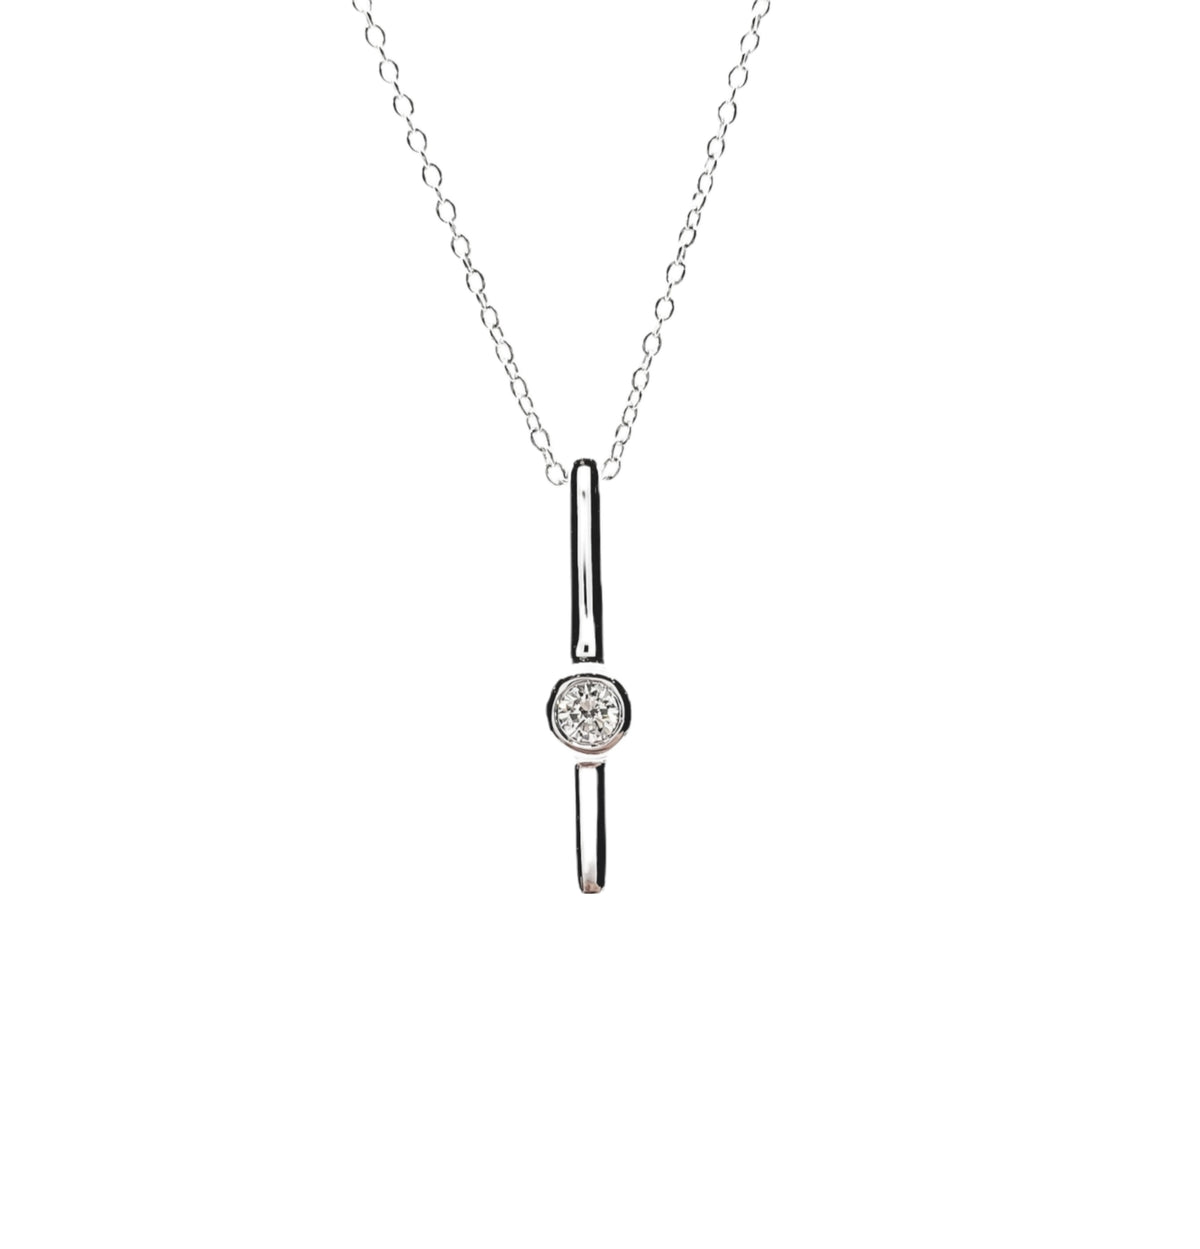 Collar de oro blanco de 10 quilates con diamantes de 0,06 quilates y cadena tipo cable (cierre de resorte), ajustable de 43 a 45 cm